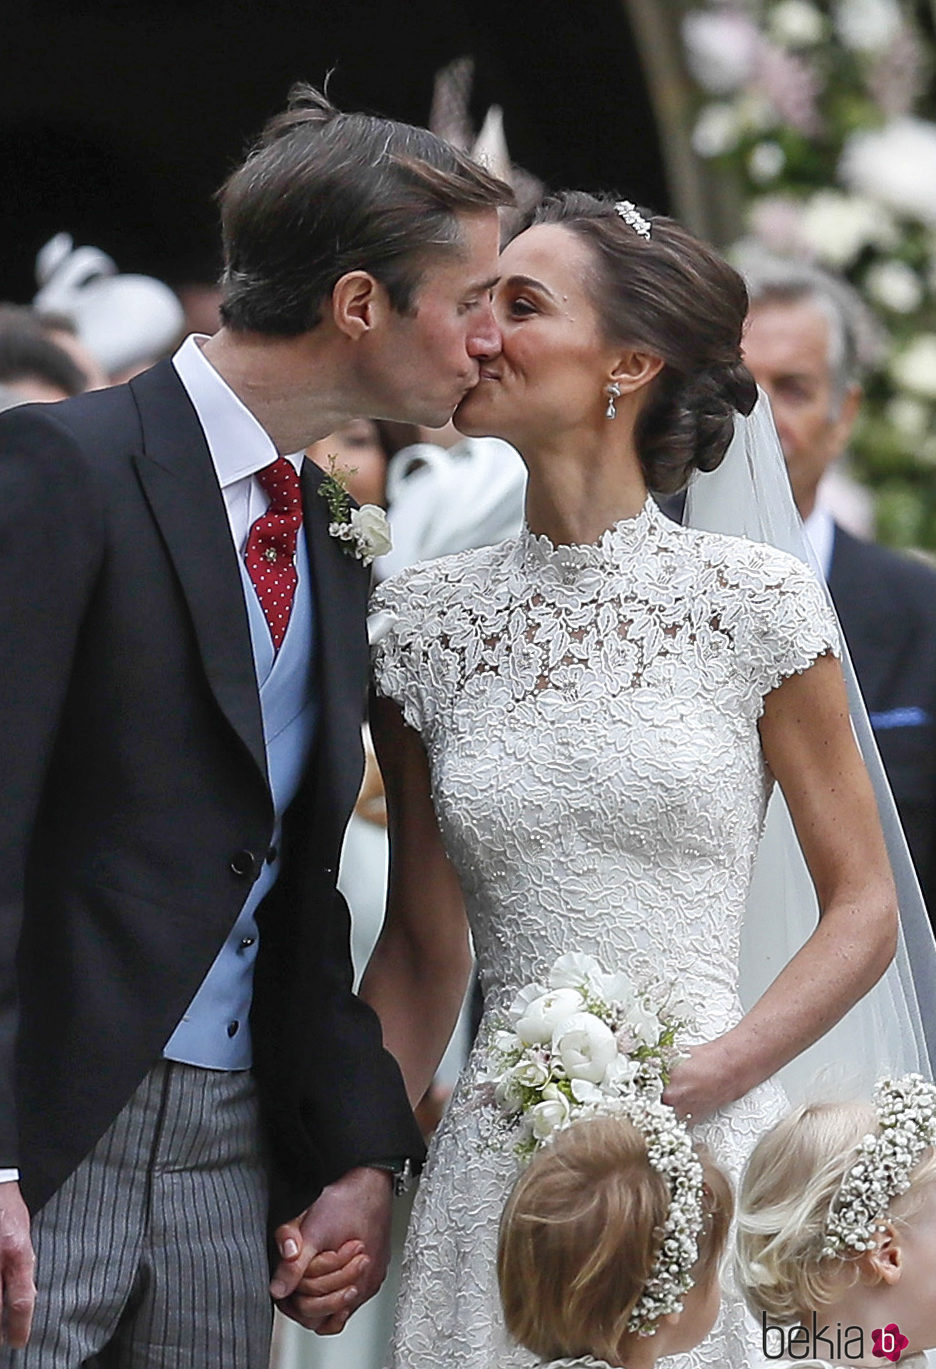 El beso entre los recién casados Pippa Middleton y James Matthews